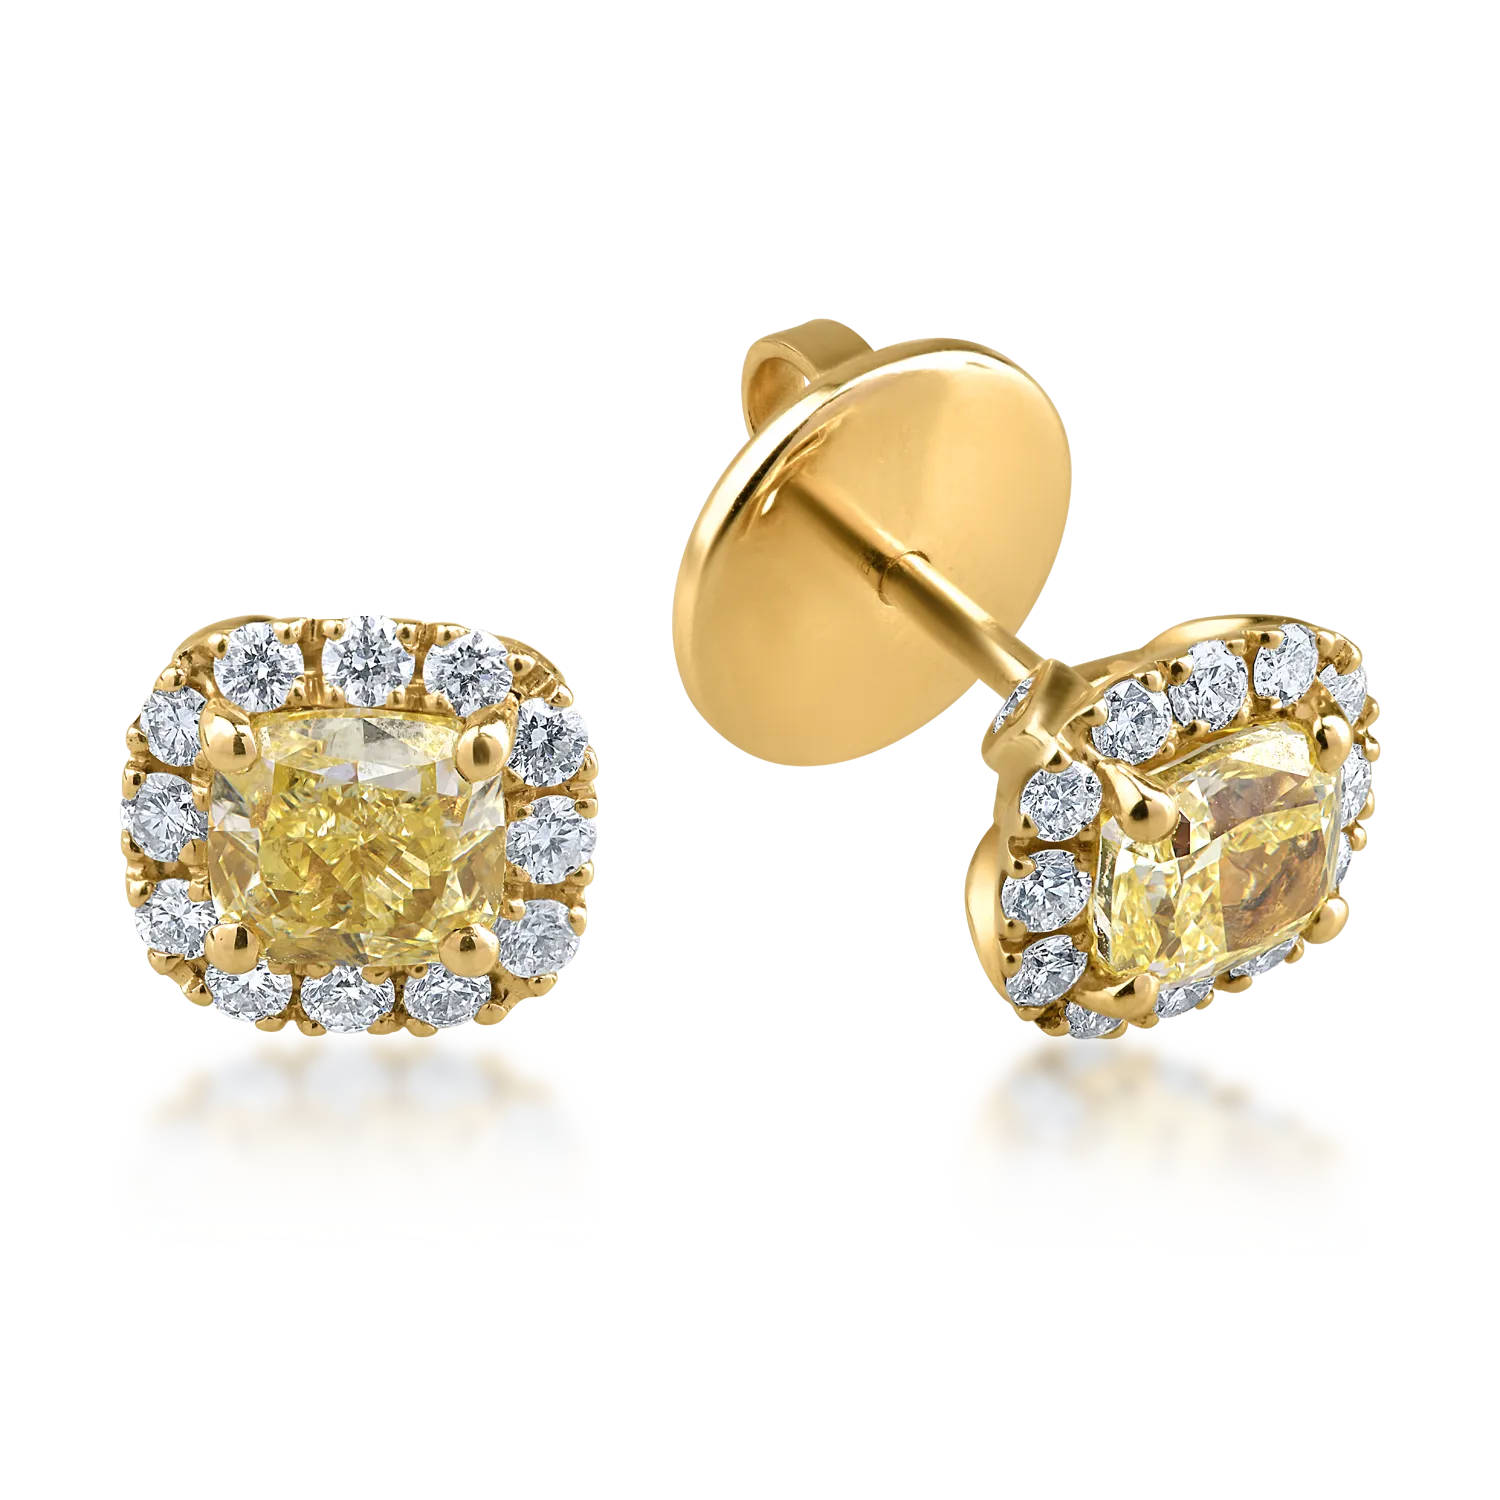 Kolczyki z żółtego złota z żółtymi fantazyjnymi diamentami o masie 1.22ct i bezbarwnymi diamentami o masie 0.38ct